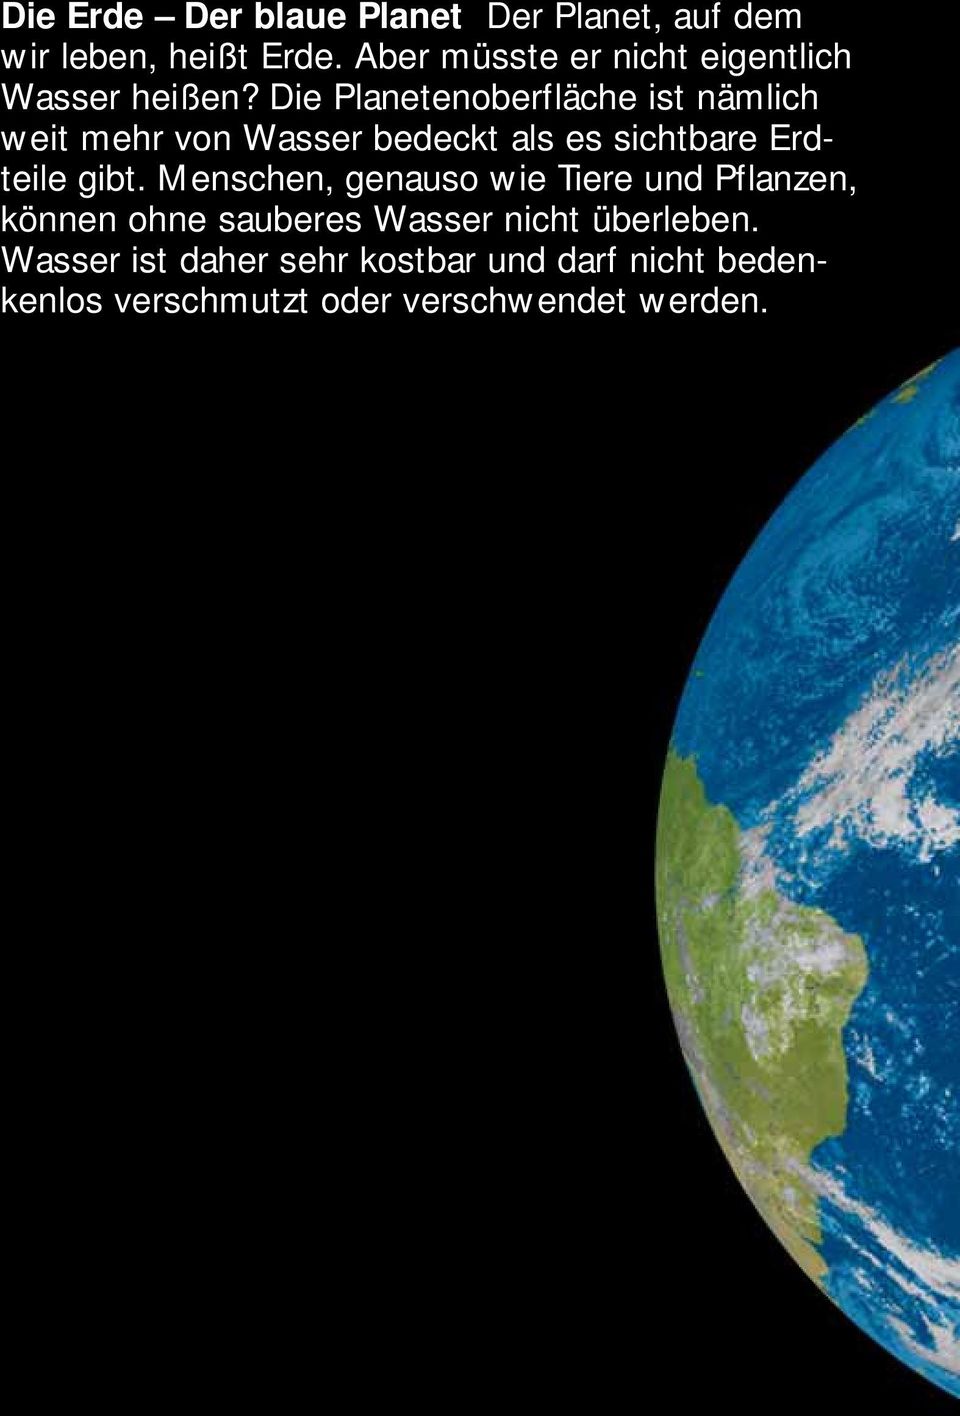 Die Planetenoberfläche ist nämlich weit mehr von Wasser bedeckt als es sichtbare Erdteile gibt.